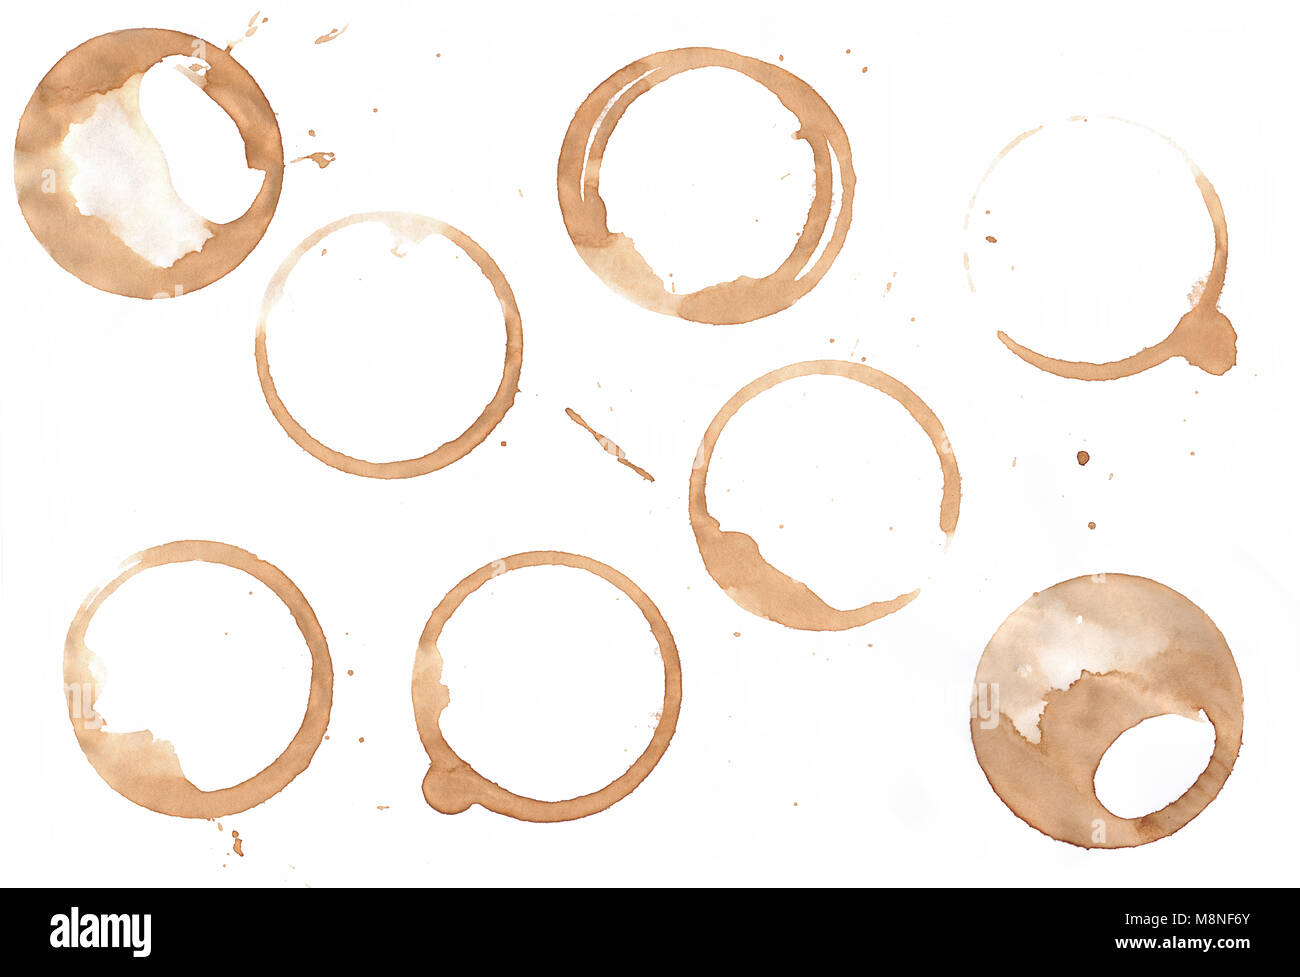 Braun Kaffee Tasse oder Becher Fleck Kreis Ringe auf weißem Hintergrund Stockfoto